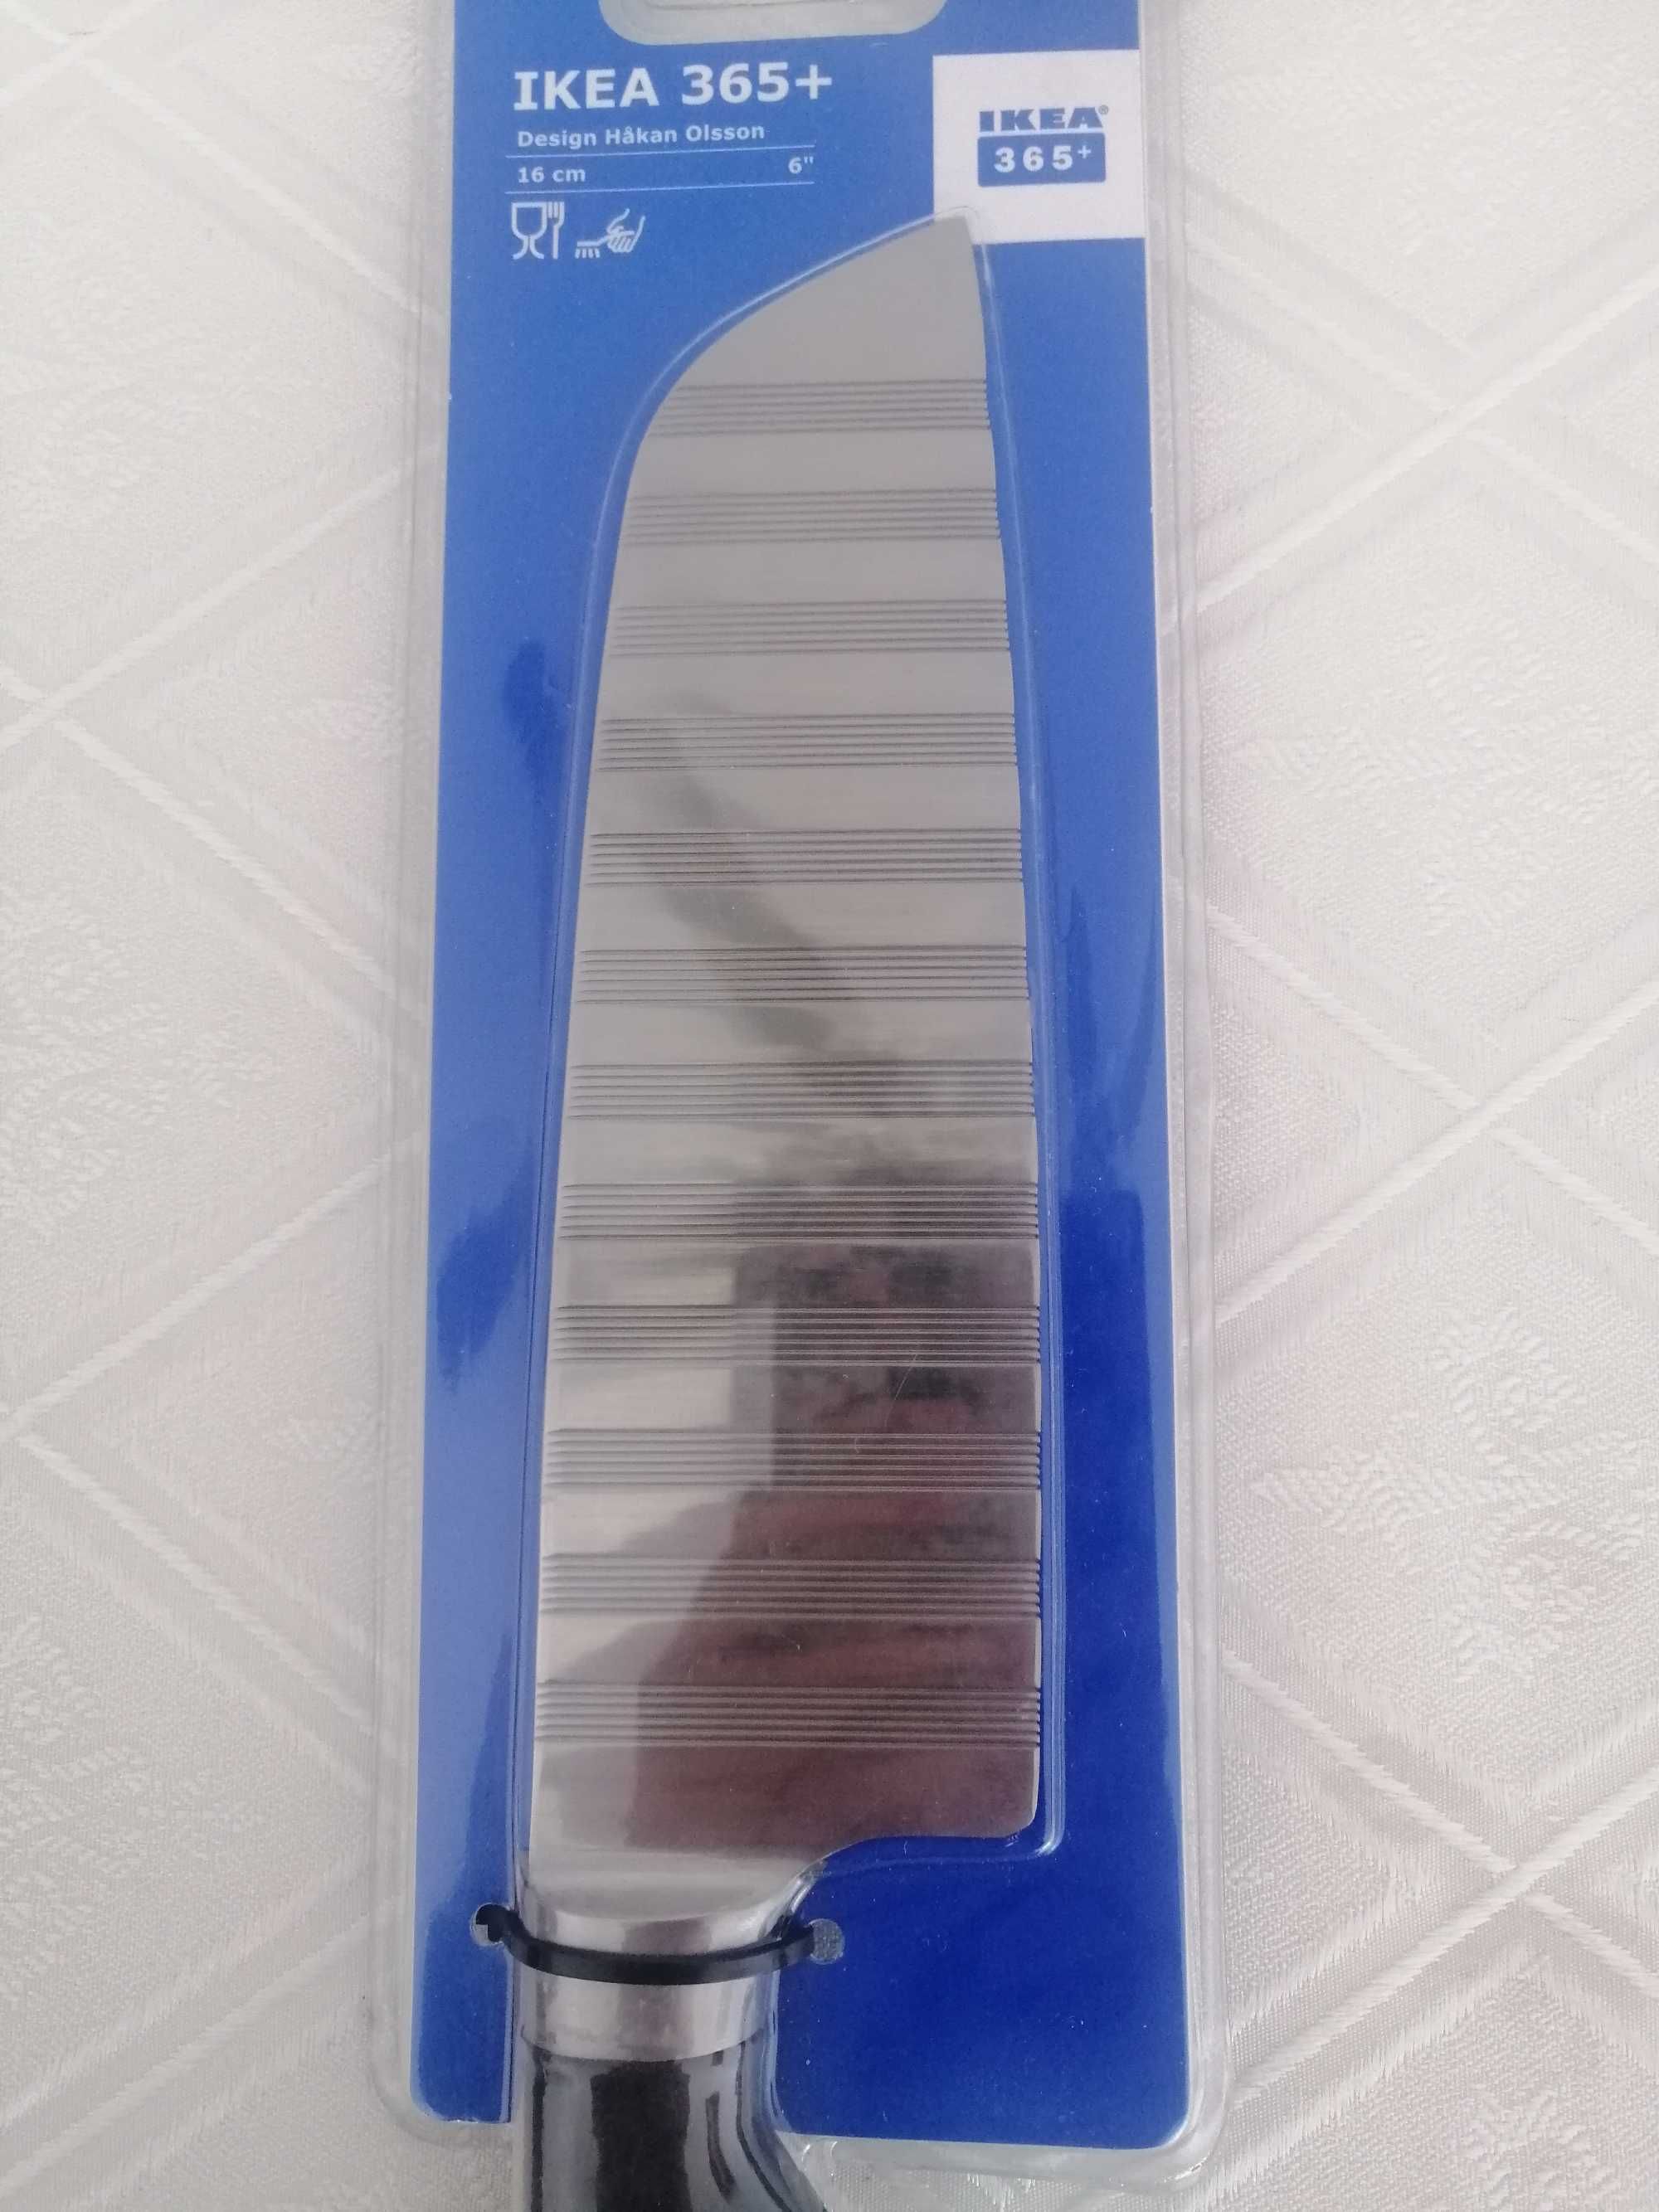 Нож за зелeнчуци +365 от Ikea